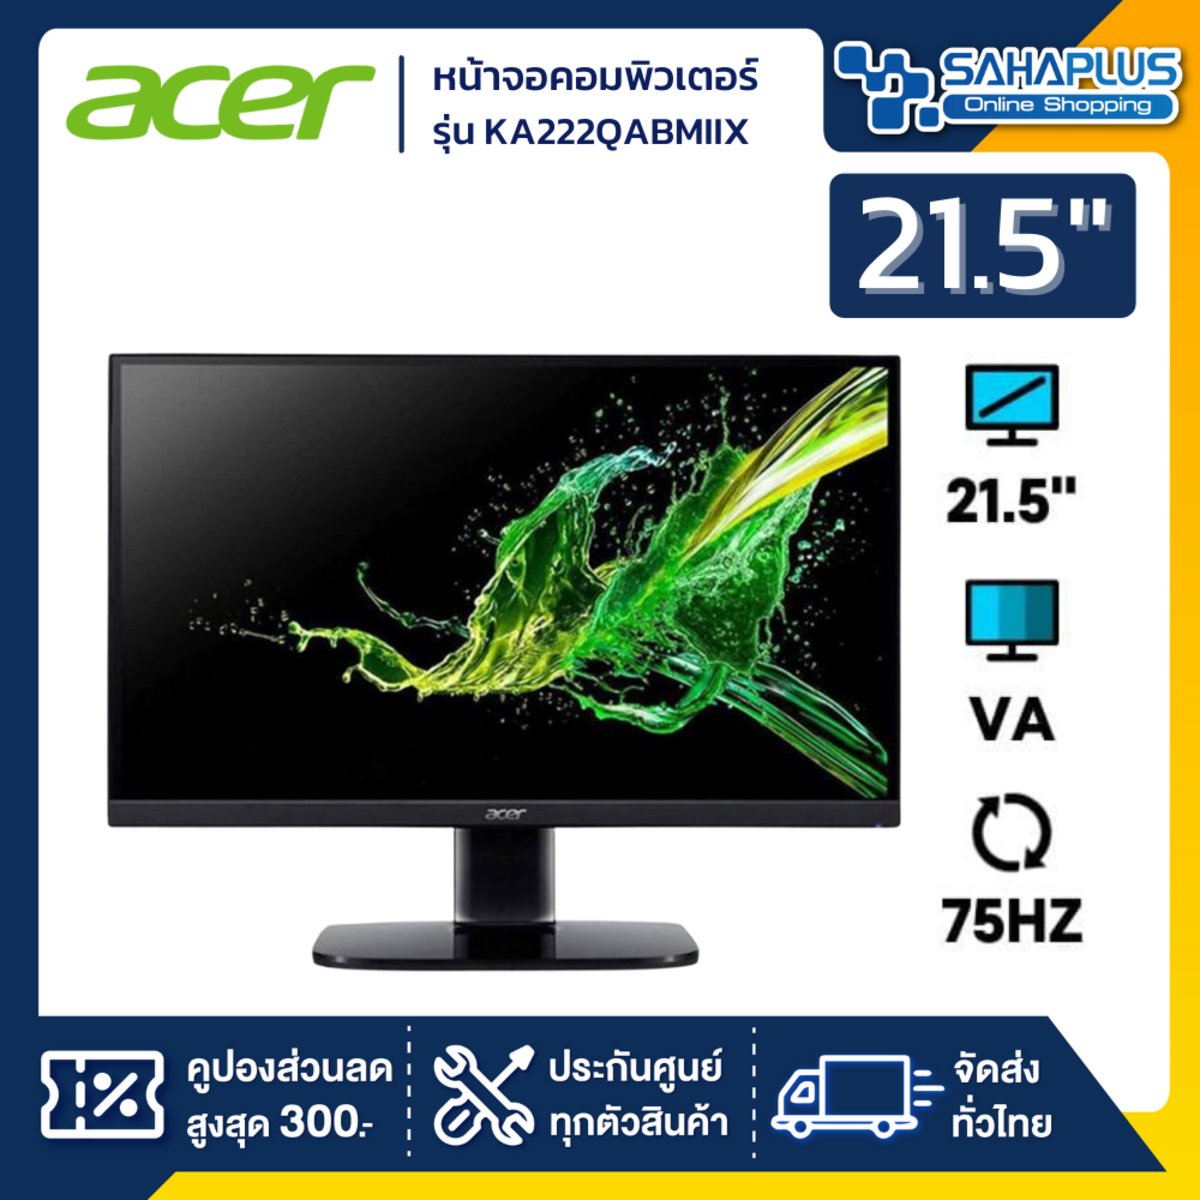 Sahaplus Online Shopping หน้าจอคอมพิวเตอร์ Monitor Acer รุ่น Ka222Qabmiix  ขนาด 21.5 นิ้ว รับประกันสินค้า 1 ปี Ka222Qabmiix